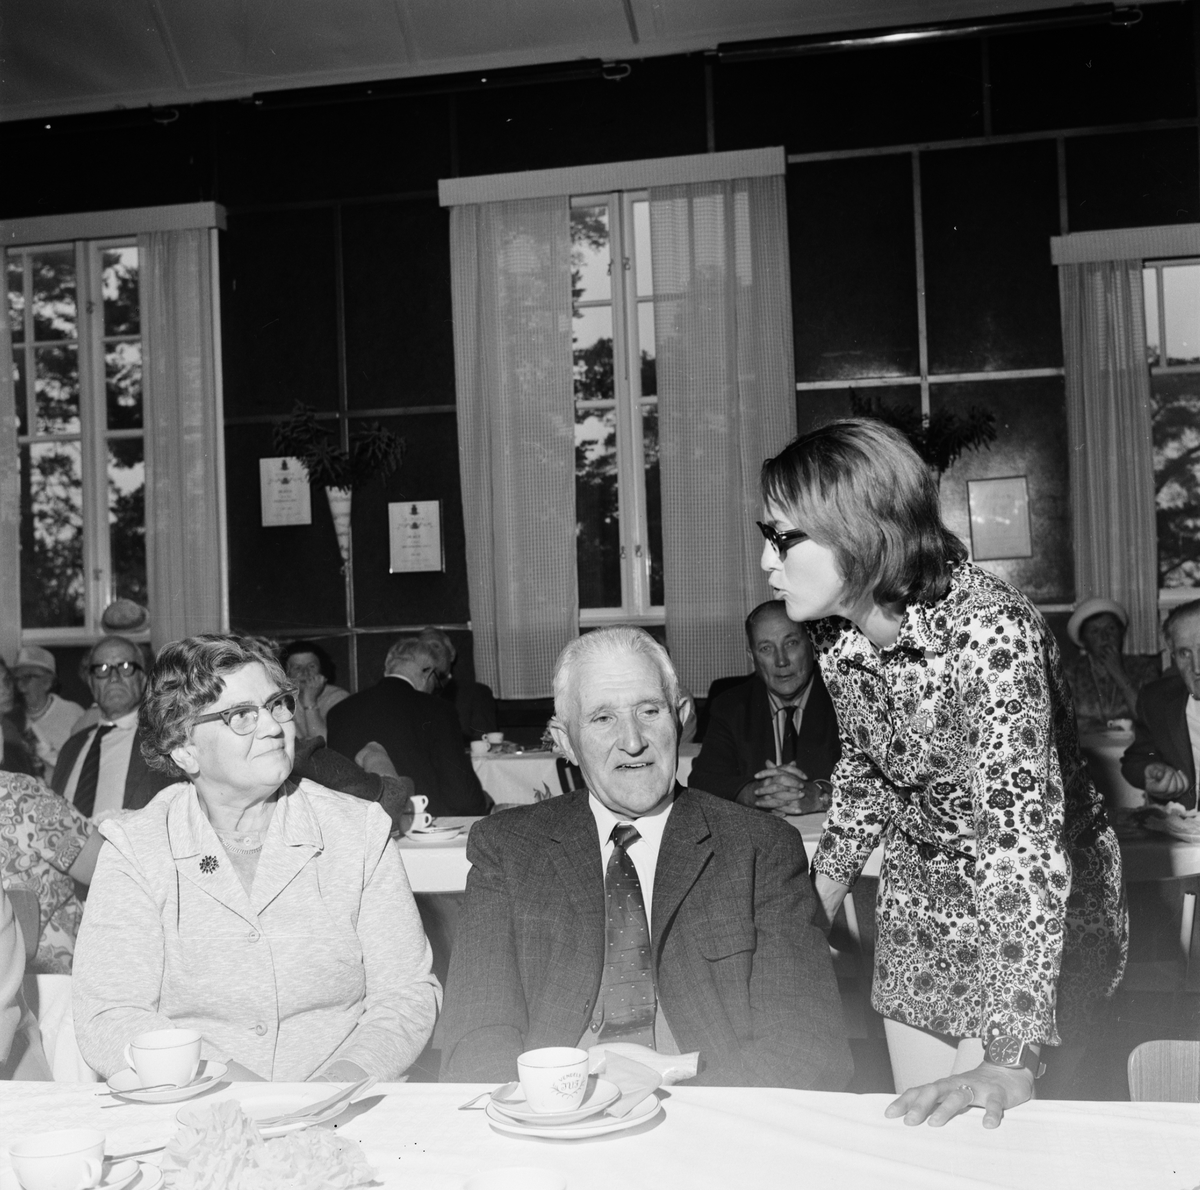 Vendelpensionärers möte, tillsammans med Eva Södergren, Vendels socken, Uppland september 1970